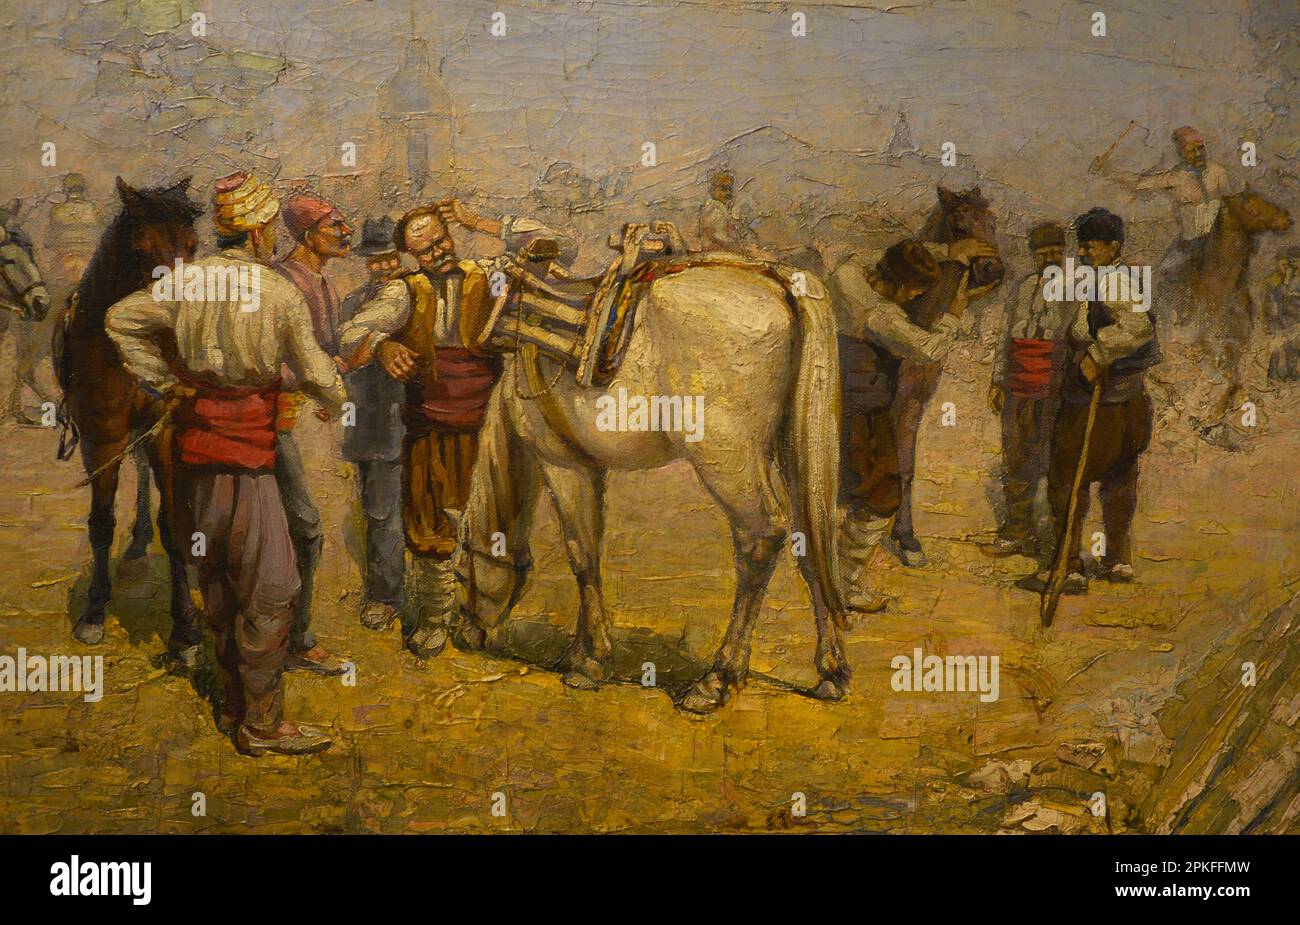 Grigor (Gocho) Savov (1880-1966). Pintor búlgaro. Marché à cheval. Détails. Galerie nationale d'art. Sofia. Bulgarie. Auteur: Grigor (Gocho) Savov (1880-1966). Peintre bulgare. Banque D'Images